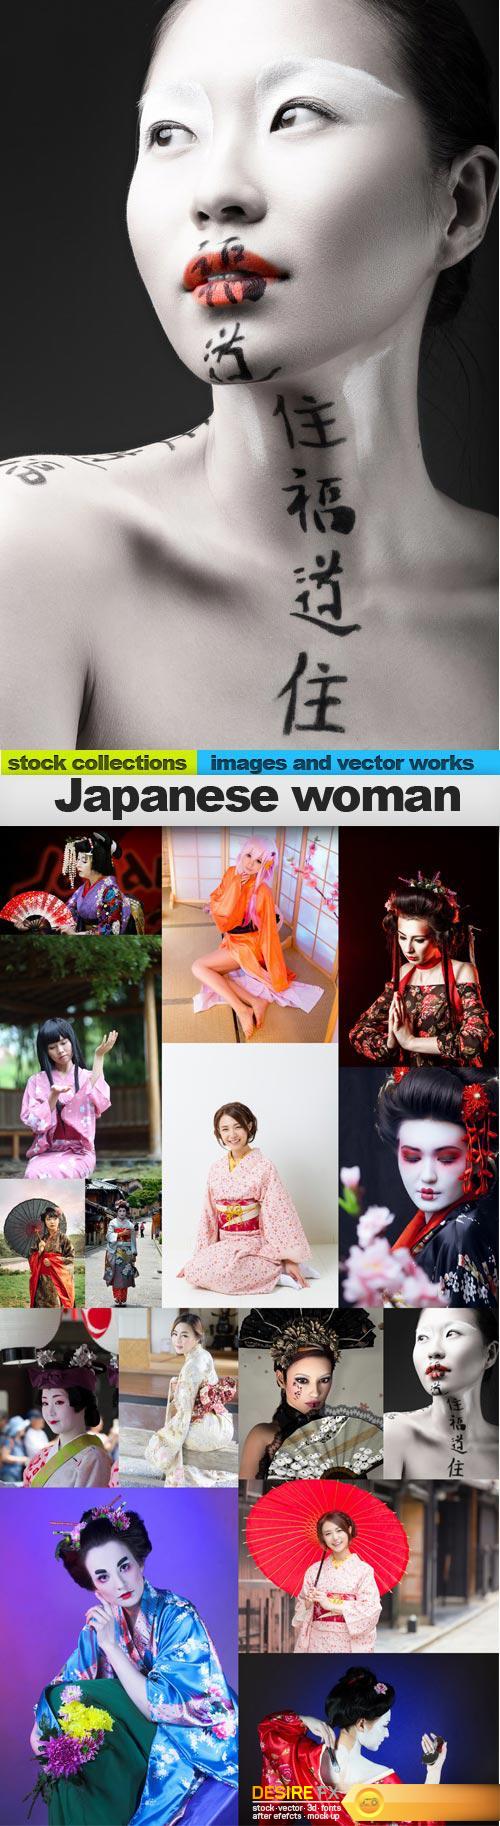 Japanese woman, 15 x UHQ JPEG